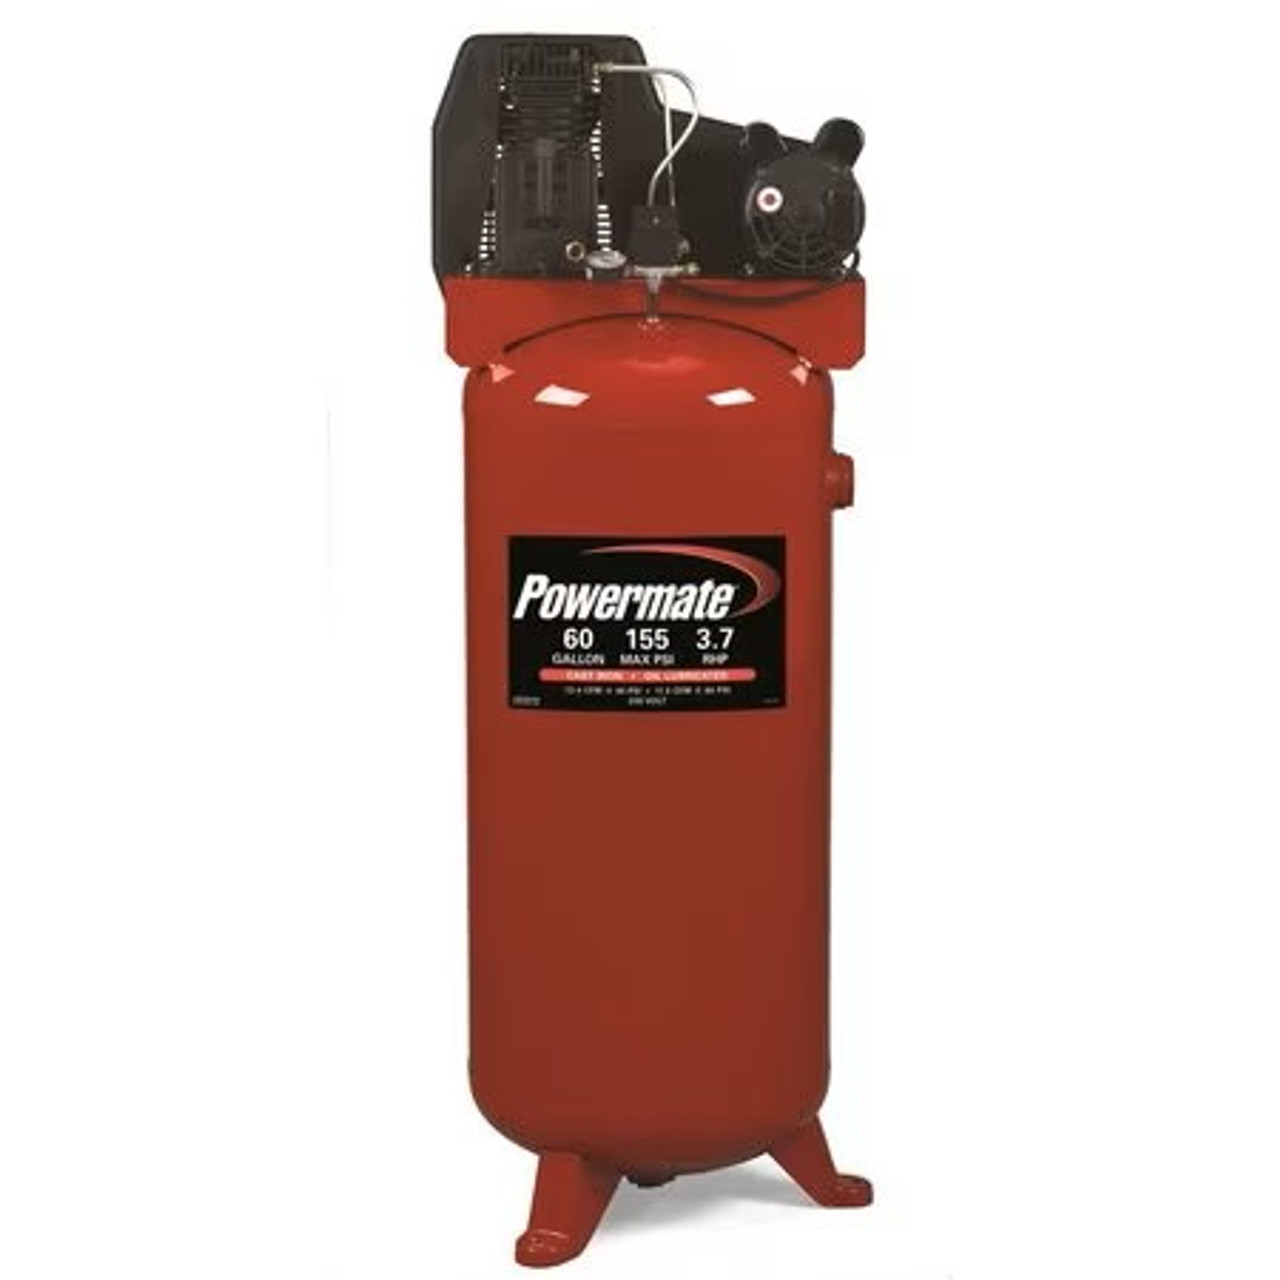 Powermate 60 Gallon Stationary 155 PSI Air Compressor